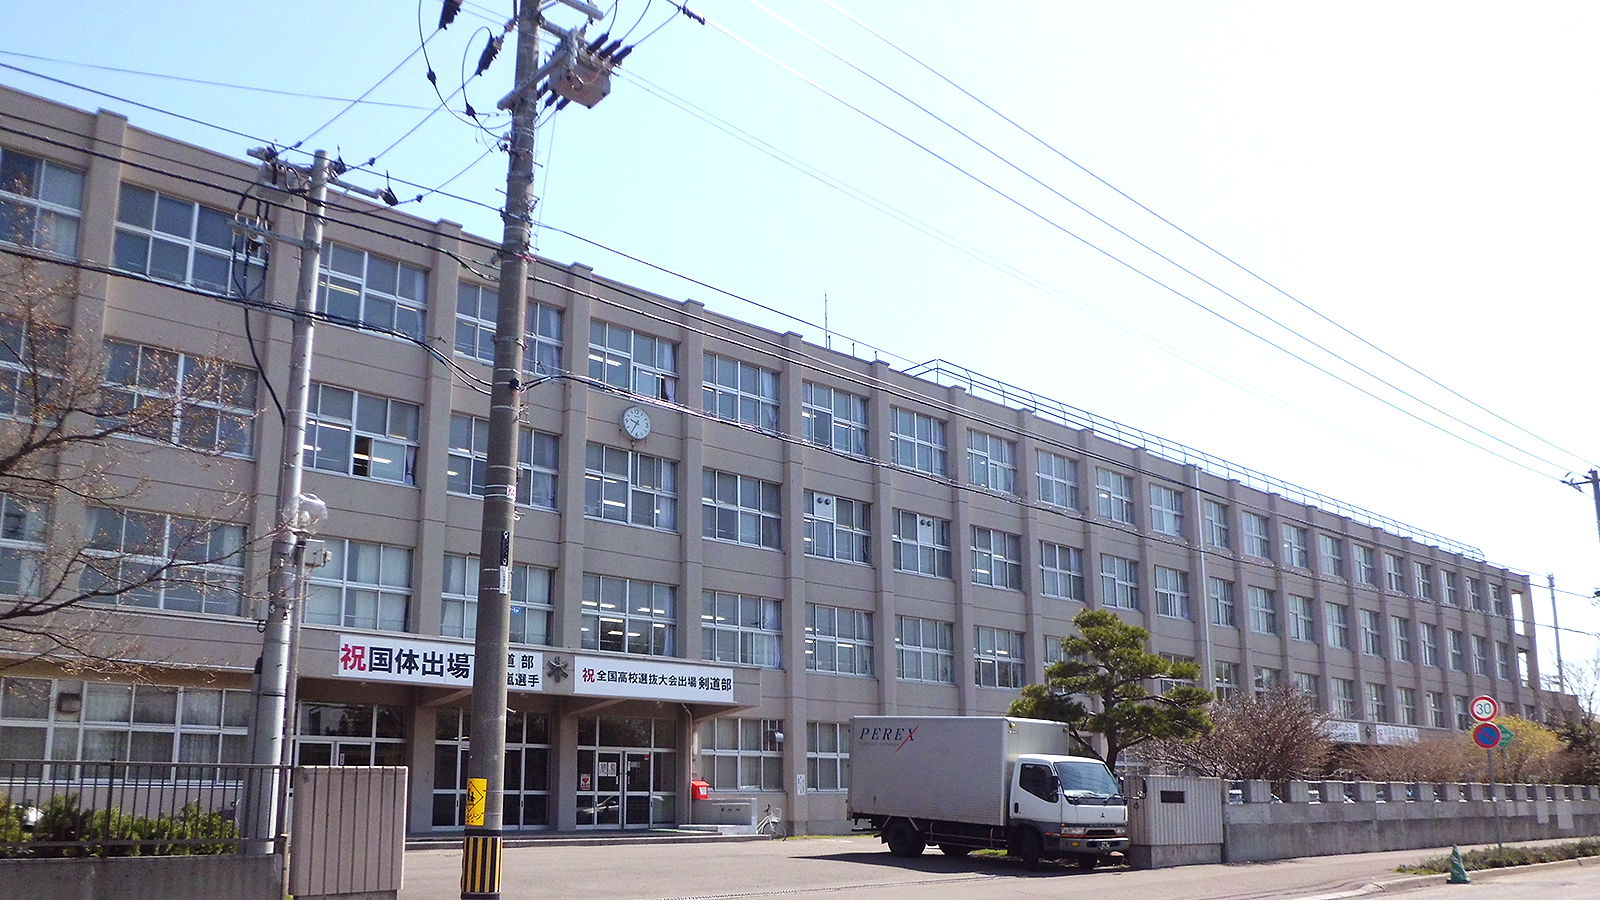 札幌新川高校の校舎正面